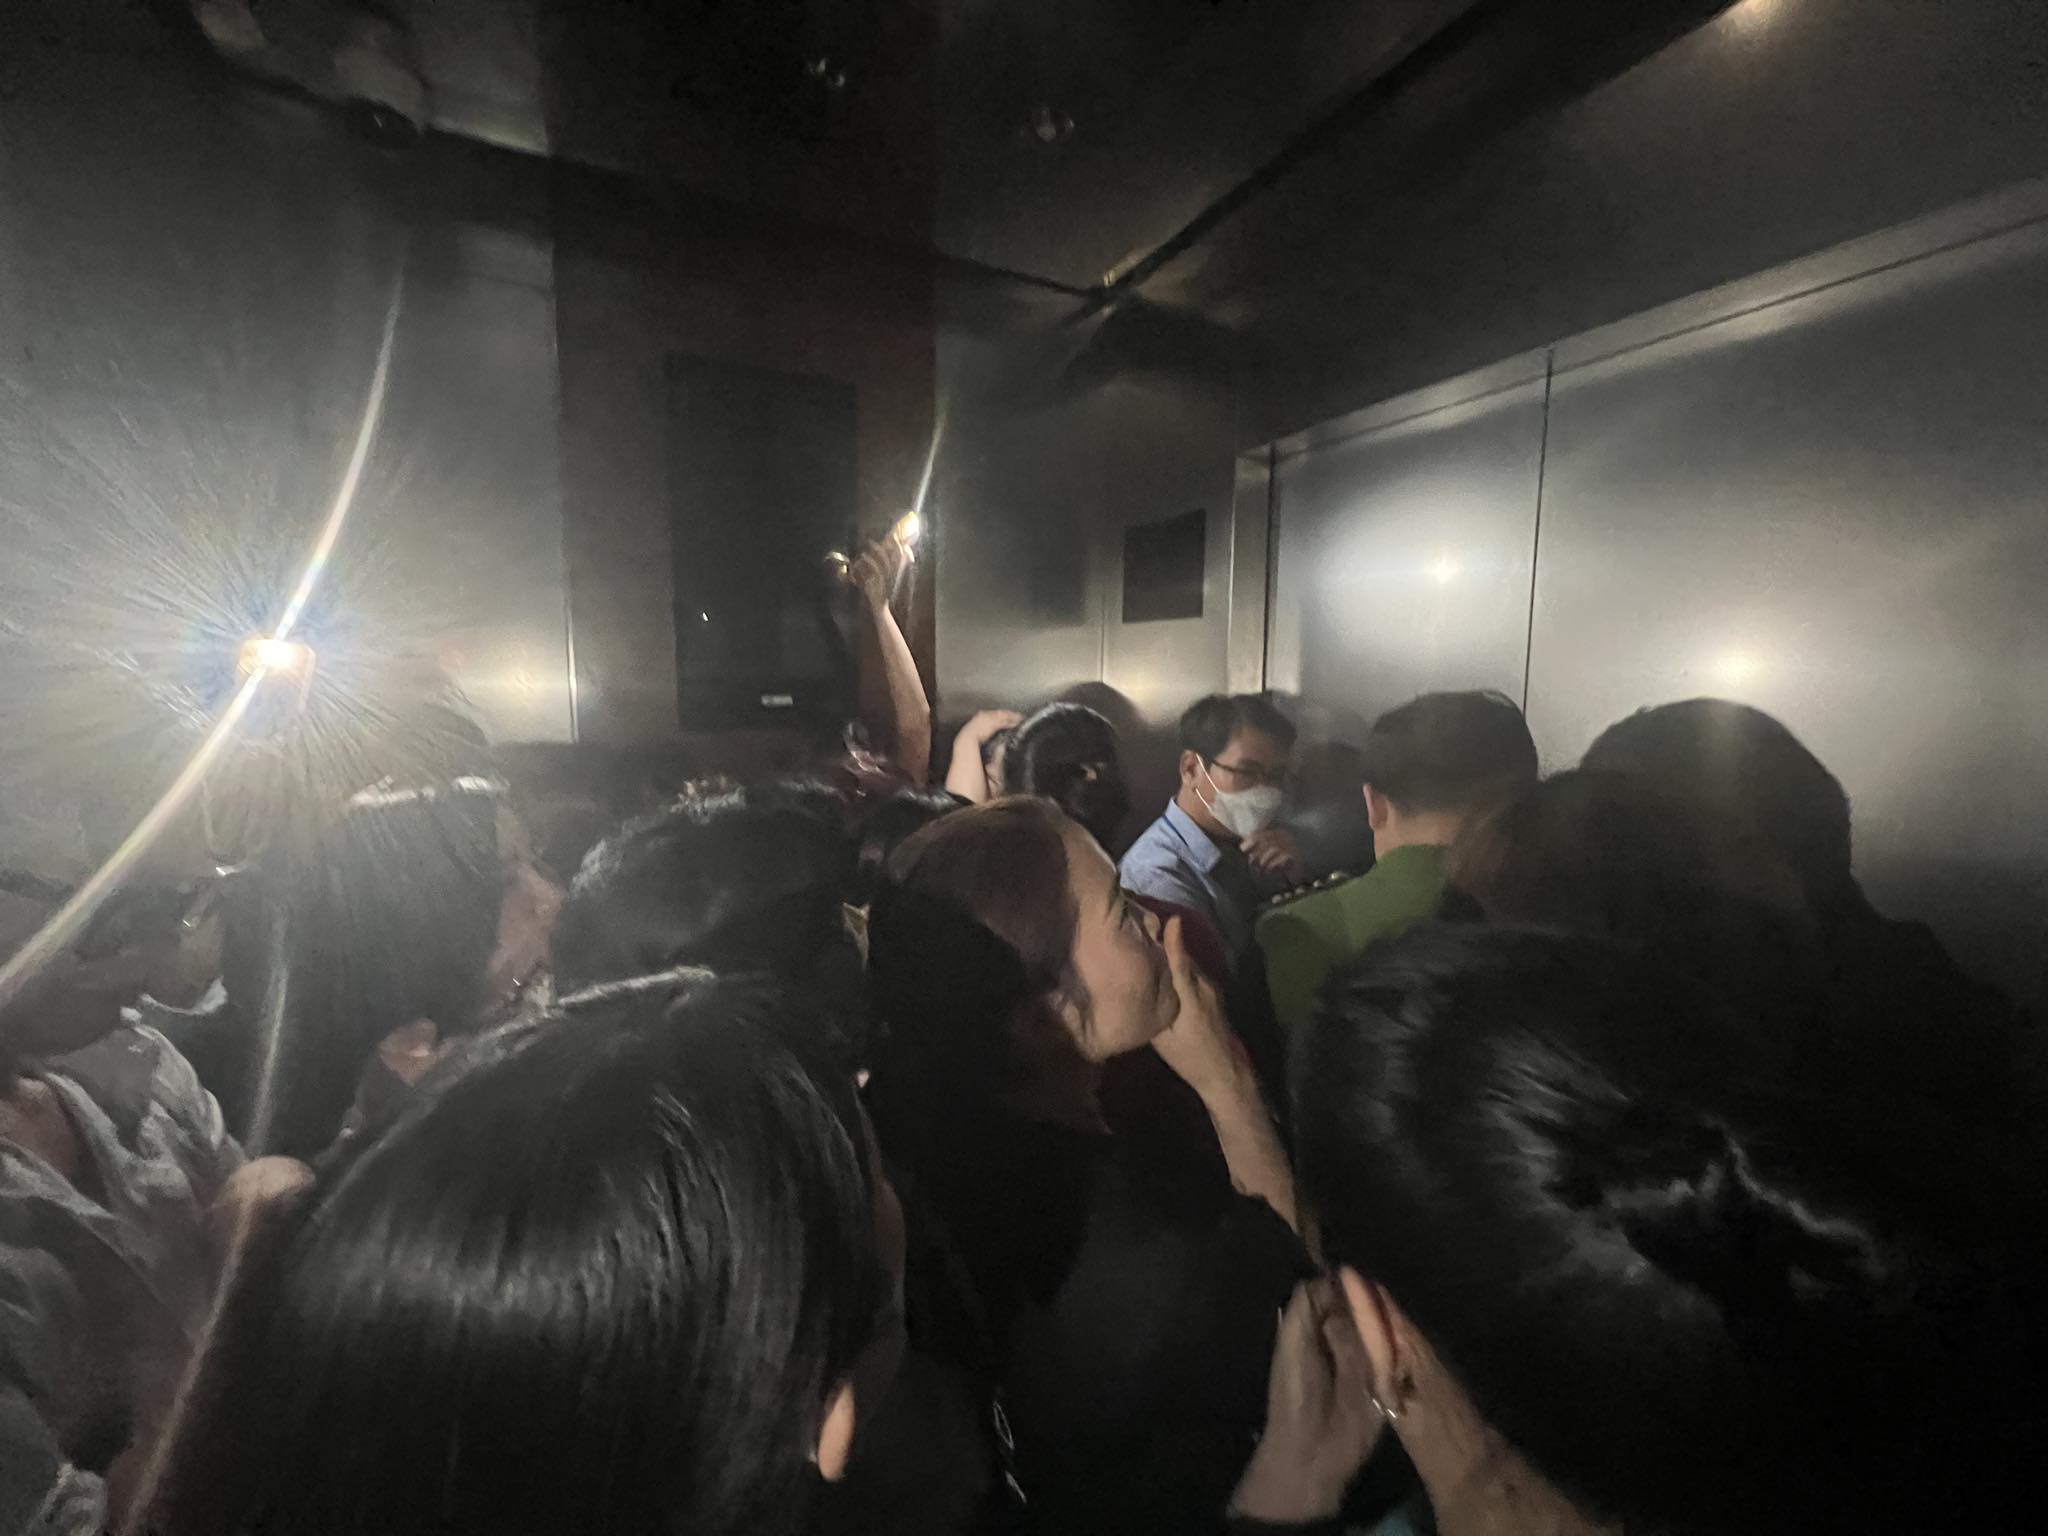 Chị Trang cùng nhiều người khác bị mắc kẹt trong thang máy vì sự cố mất điện đột ngột